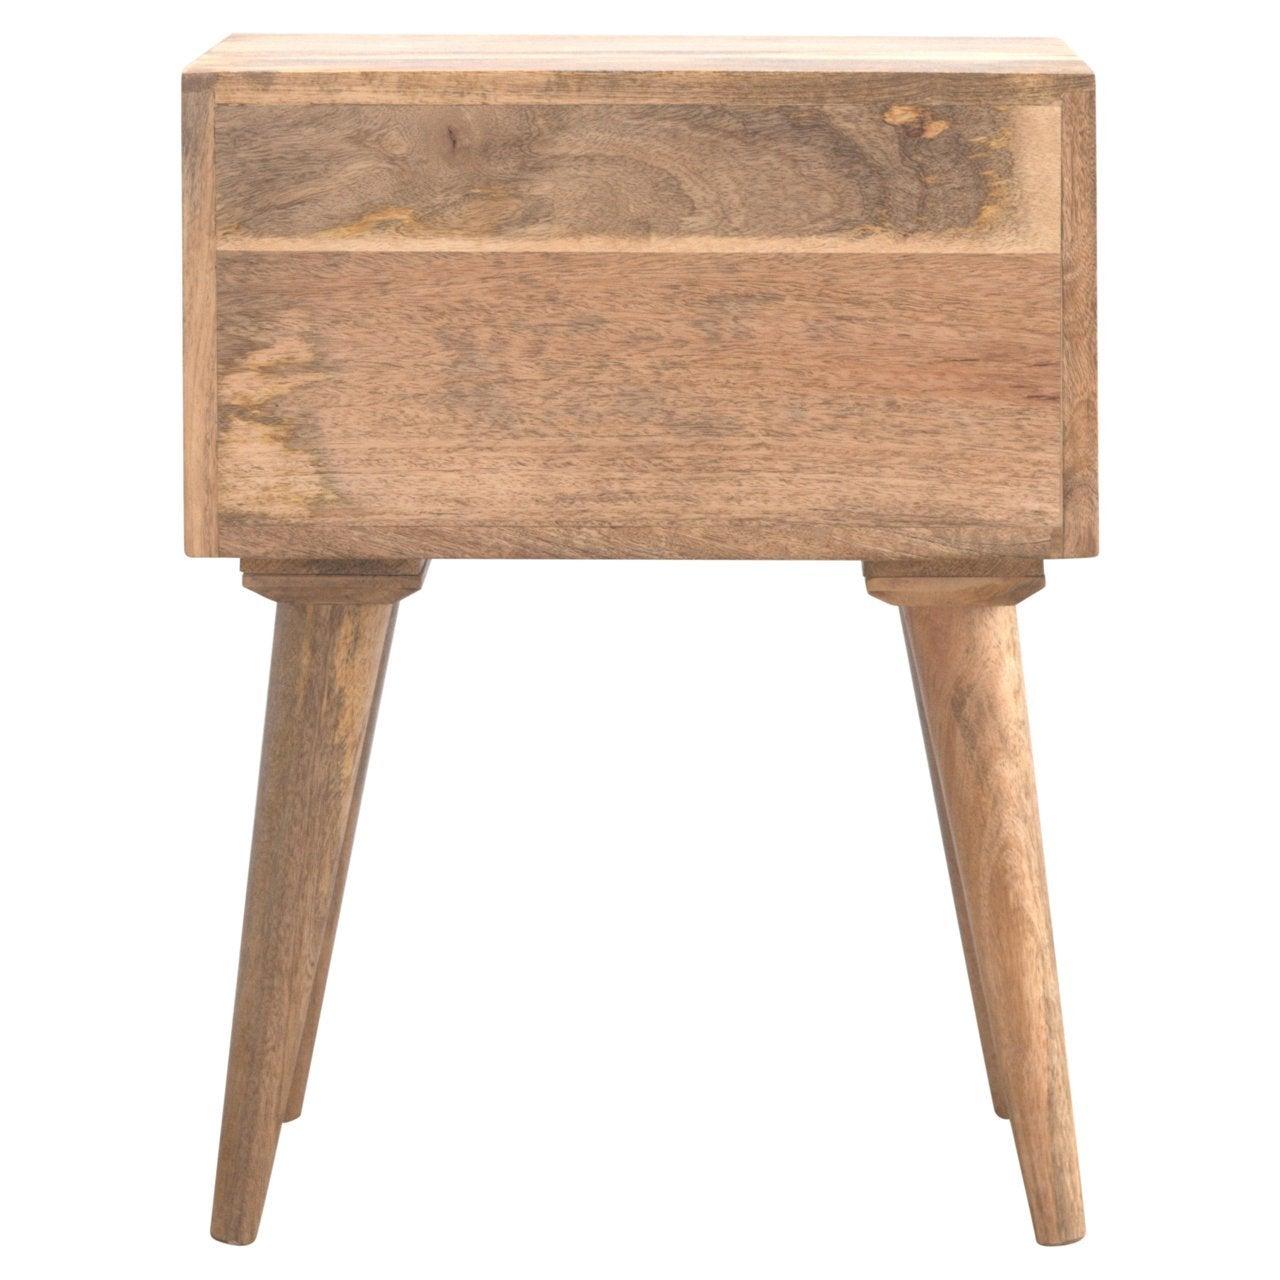 Modern solid wood bedside table - crimblefest furniture - image 10